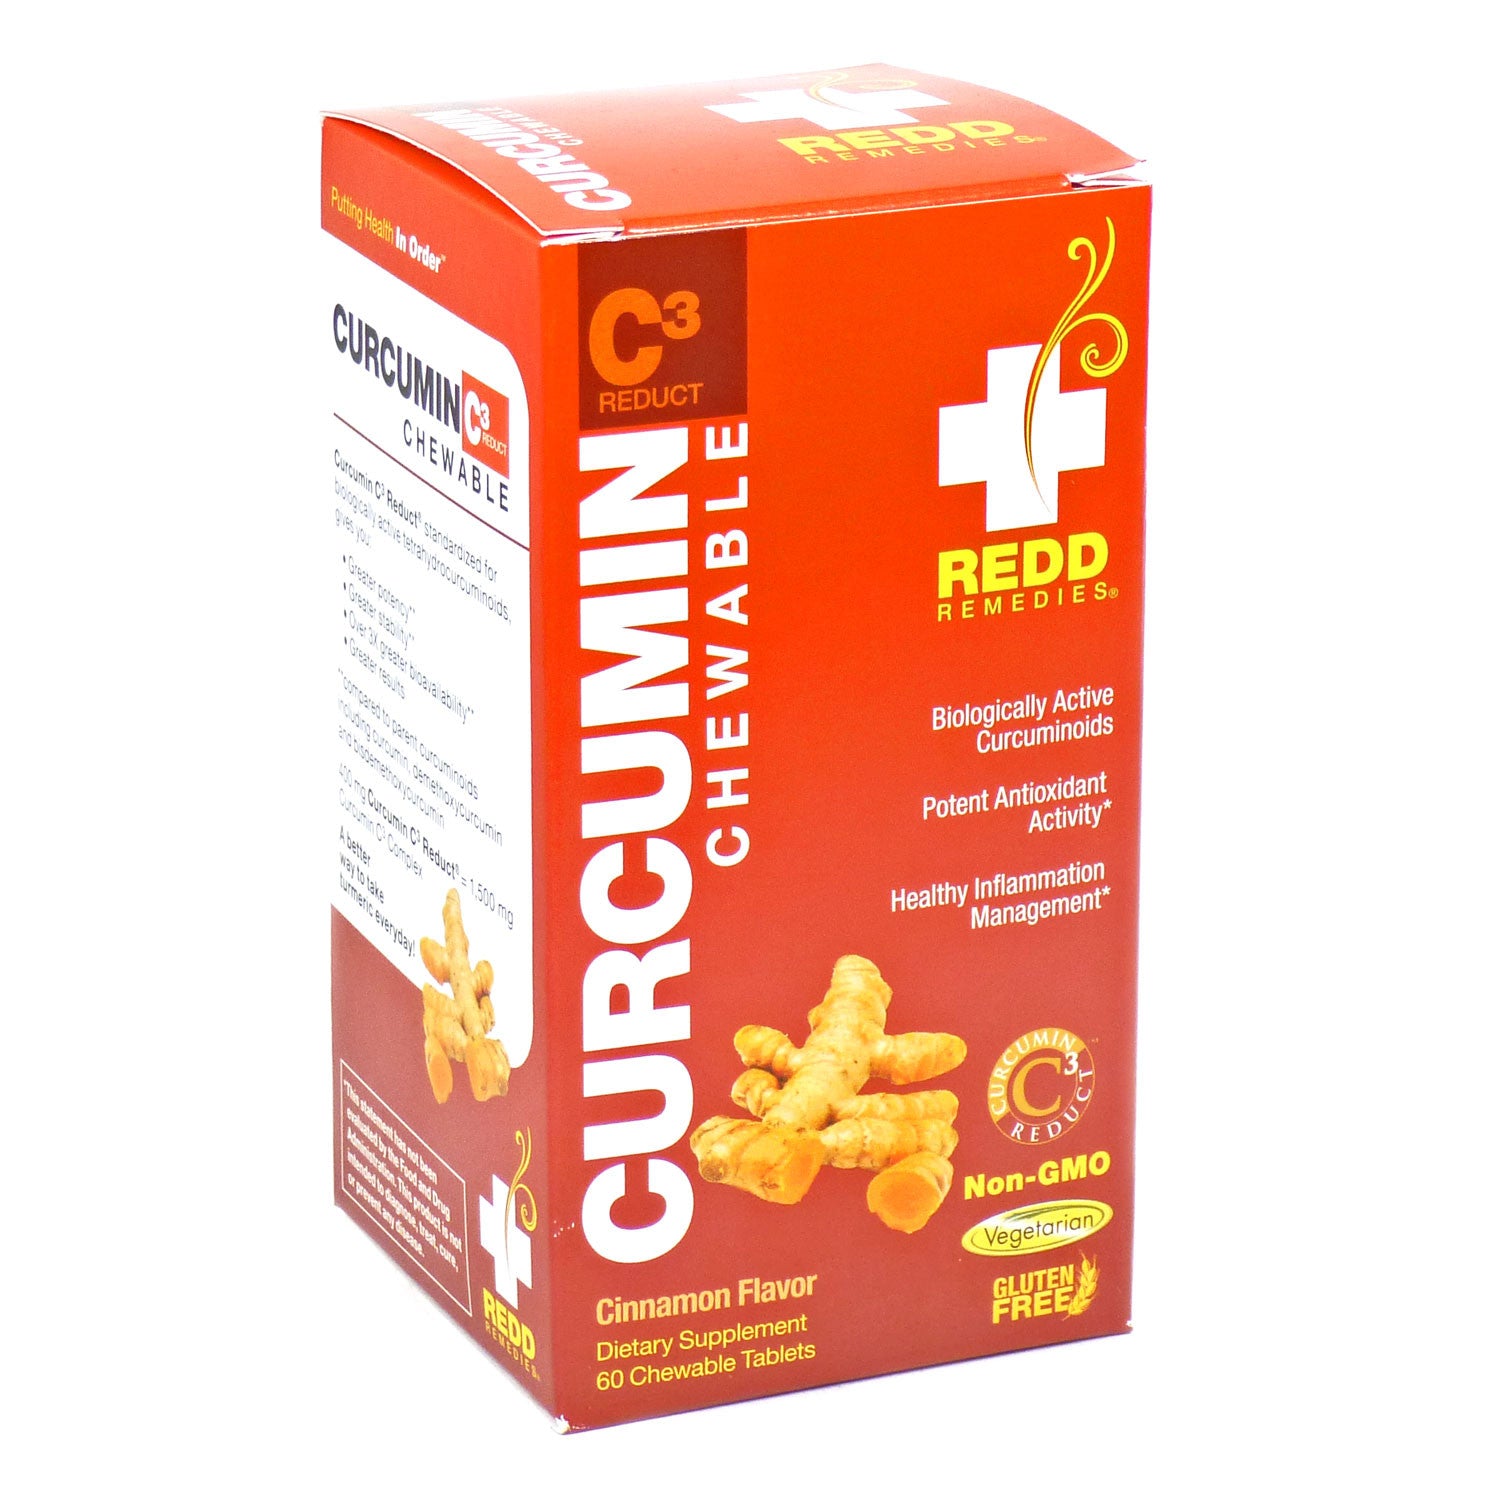 Redd Remedies La Curcumina Canela Masticables De Los Remedios - 60 Tabletas Masticables